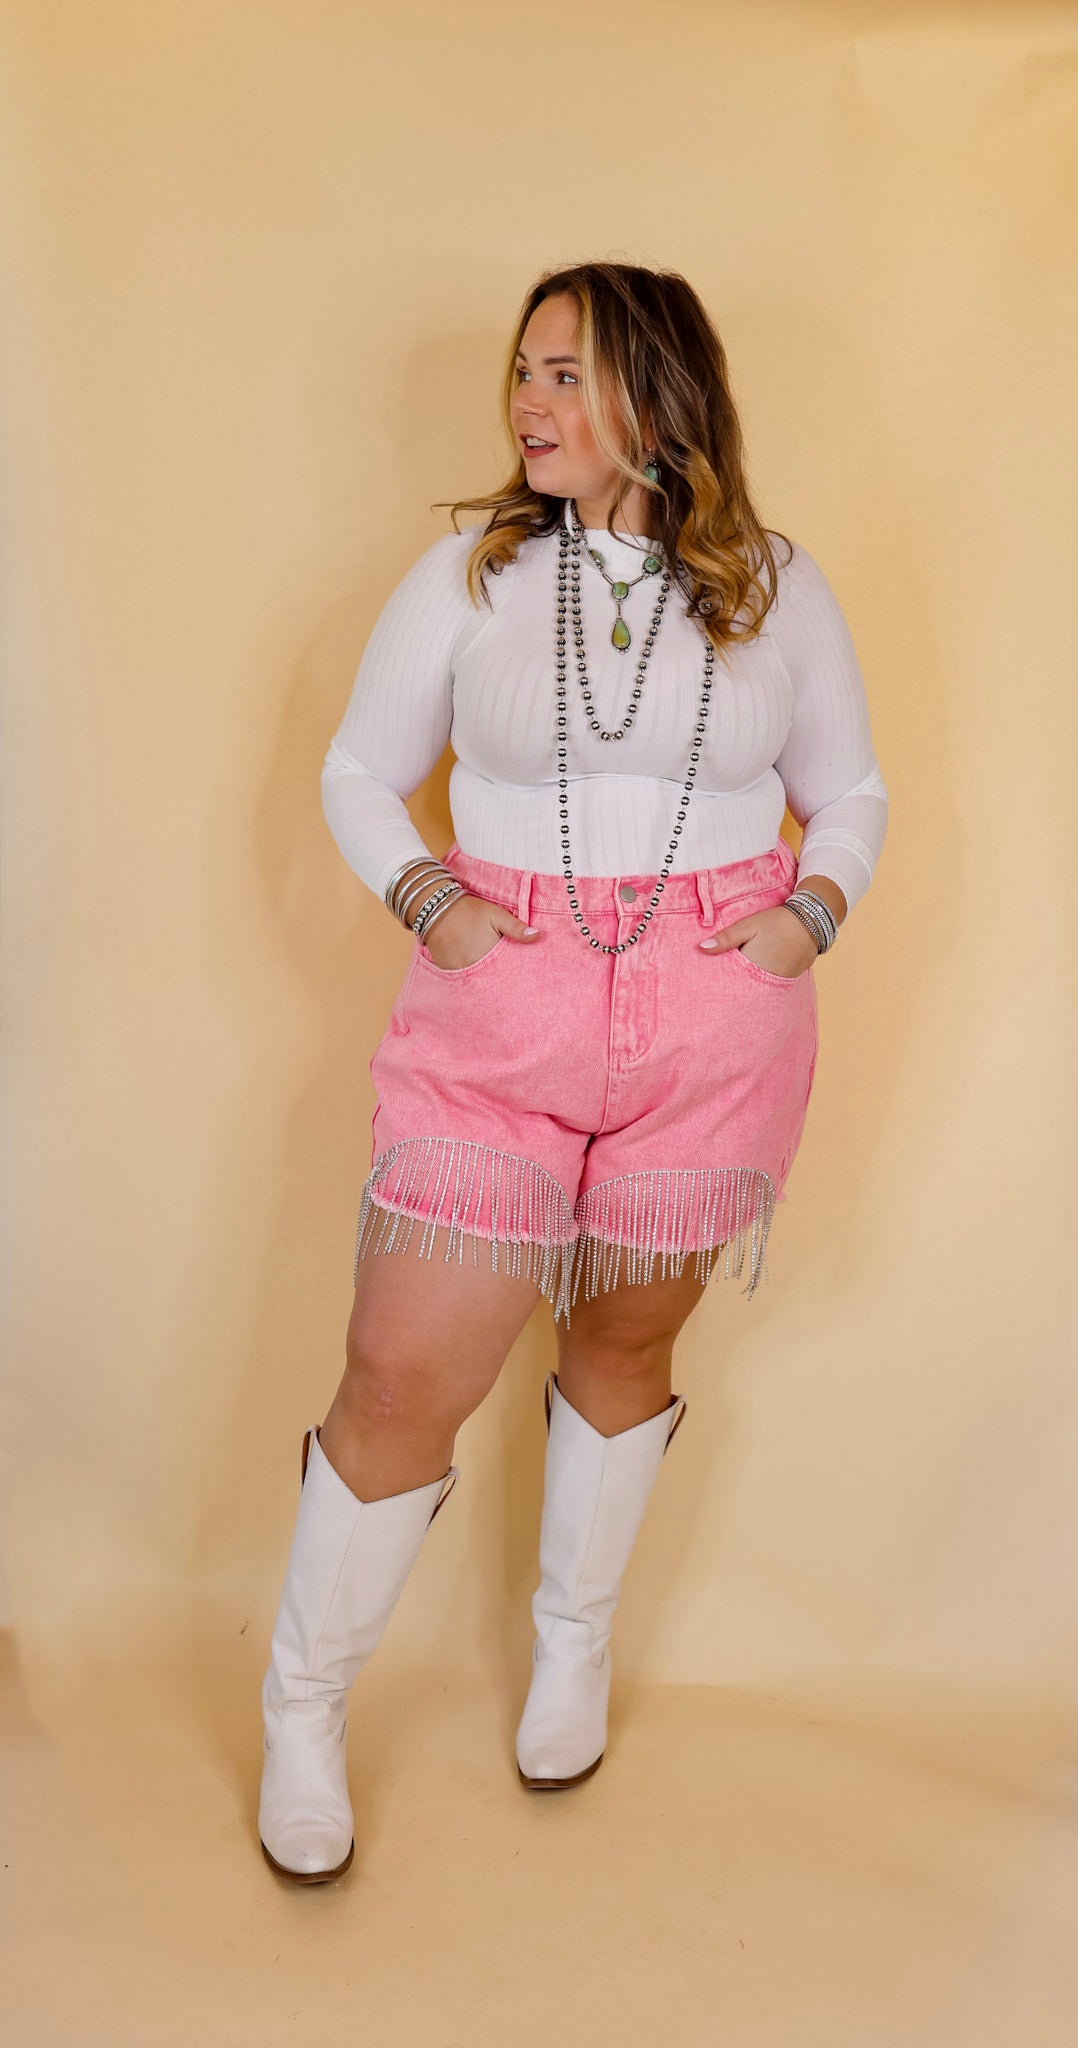 Saddle Up Crystal Fringe Distressed Denim Shorts in Pink - Giddy Up Glamour Boutique